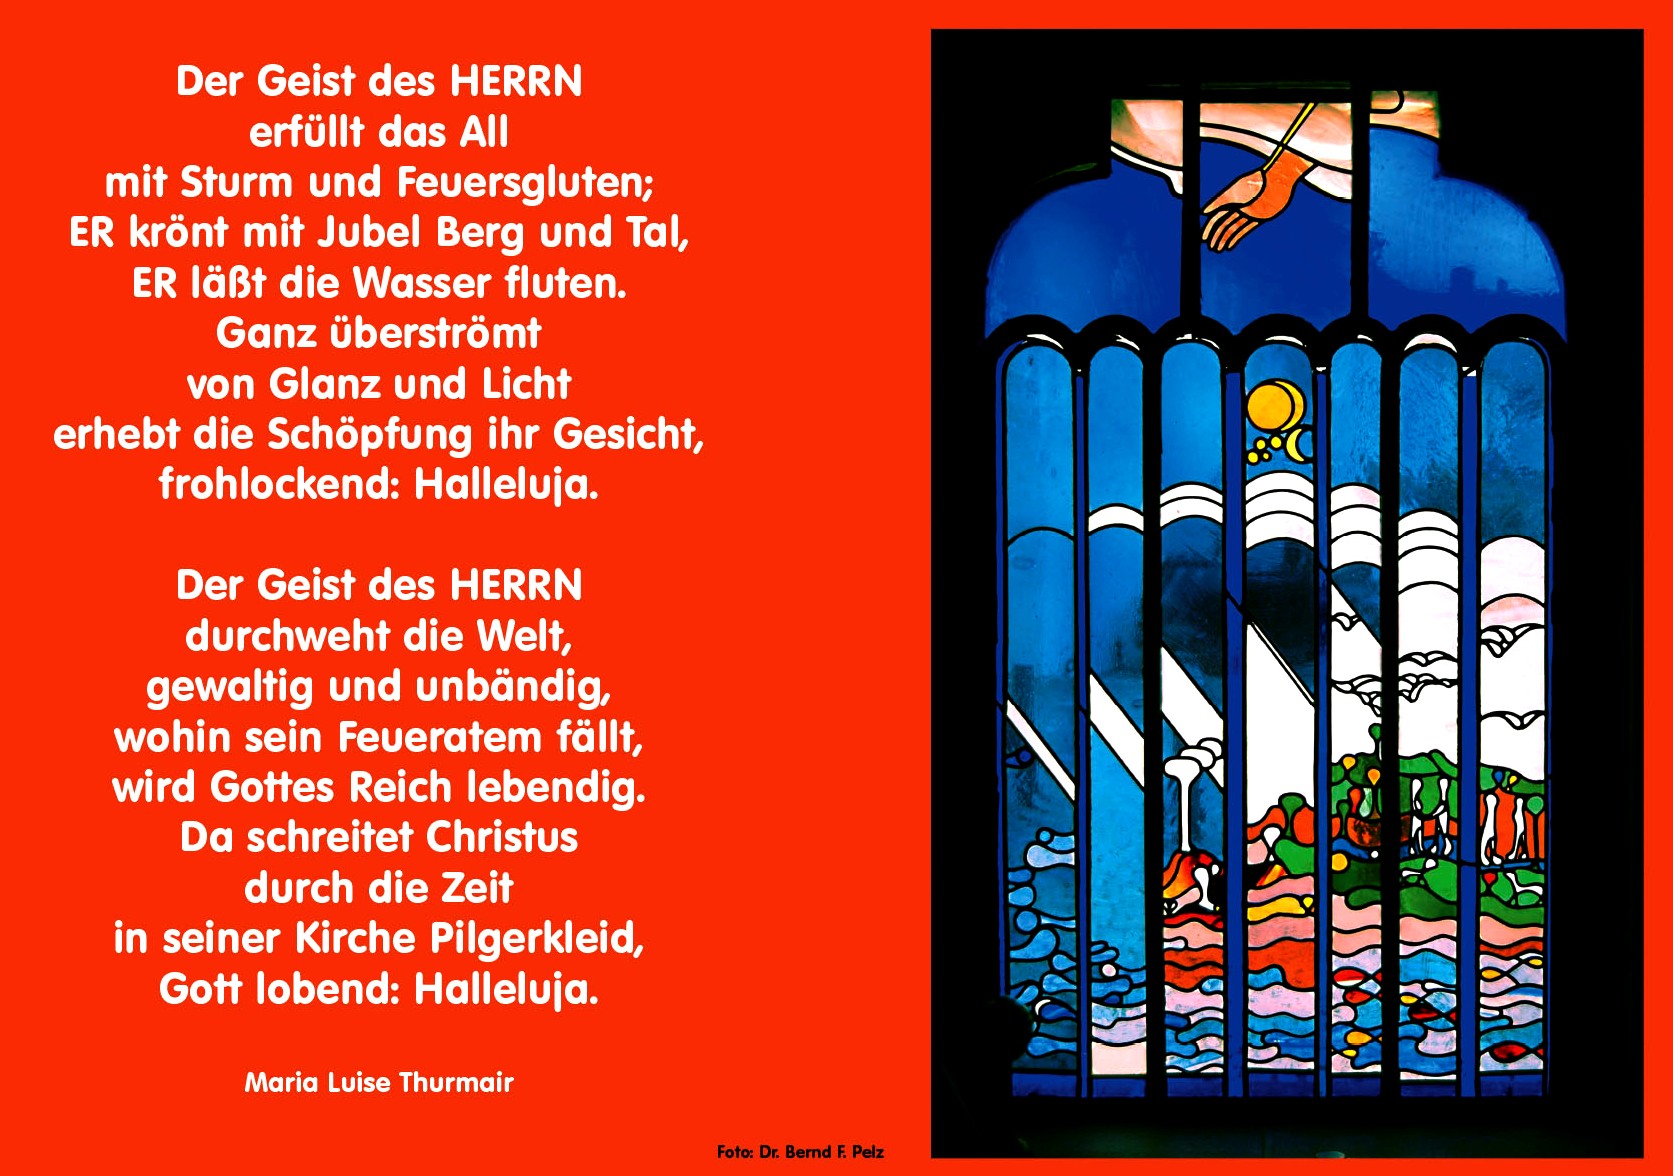 ECCLESIA-Plakat des KOMM-MiT-Verlags in Münster